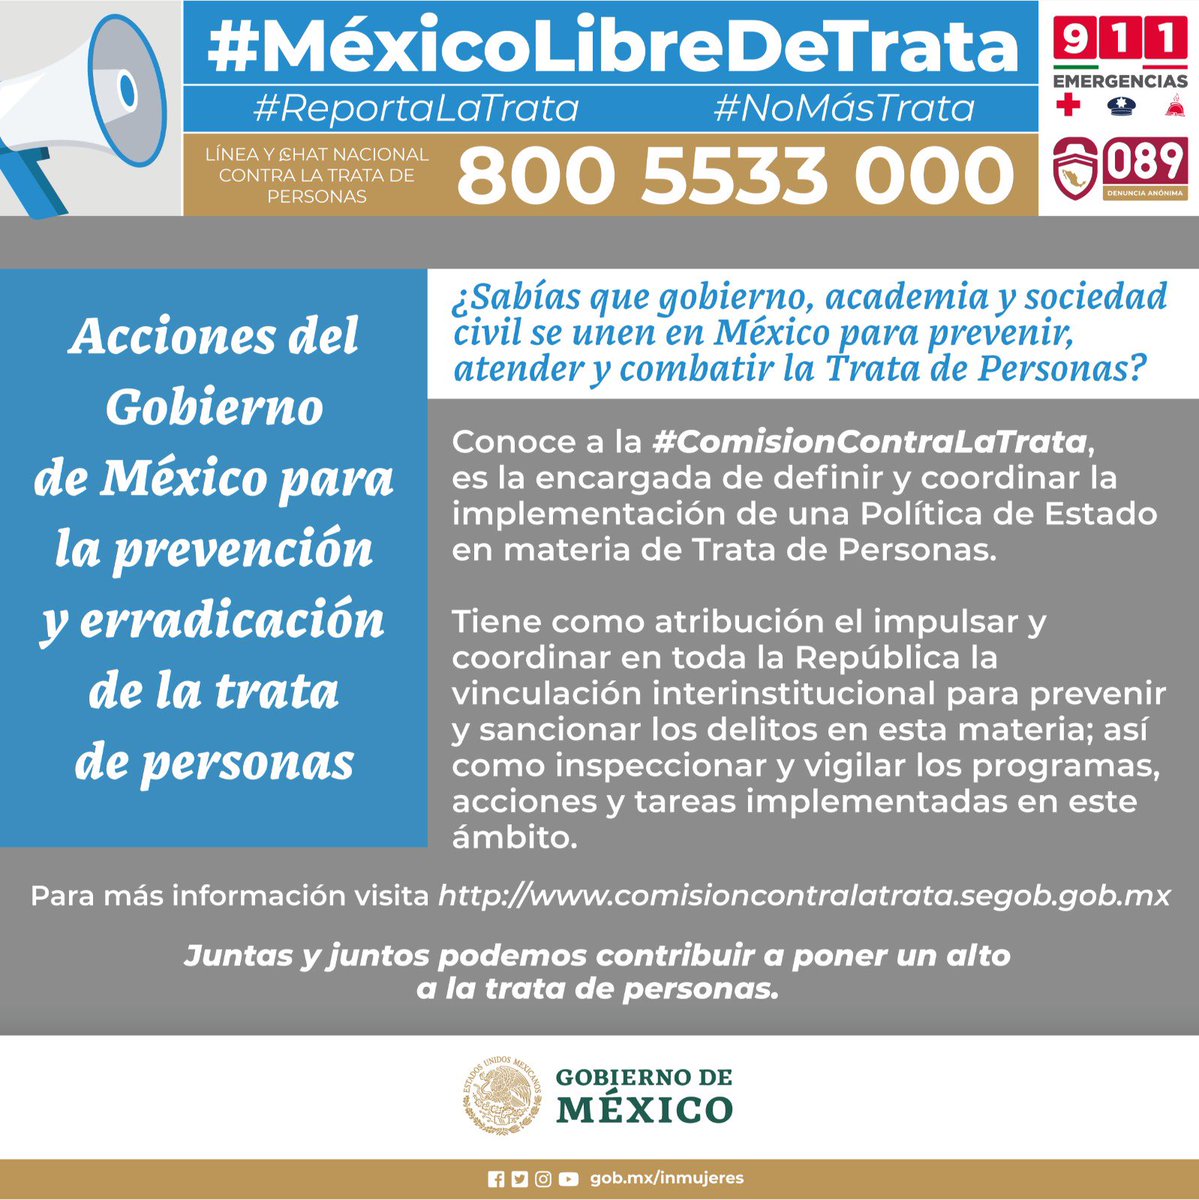 La #ComisiónContraLaTrata es la encargada de definir y coordinar la implementación de políticas públicas en materia de trata de personas. 
💻Conoce más en comisioncontralatrata.segob.gob.mx 
🚨Denuncia al 0-89 o al 9-1-1
#LíneaNacional 800 5533 000
#ReportaLaTrata
#MéxicoLibreDeTrata